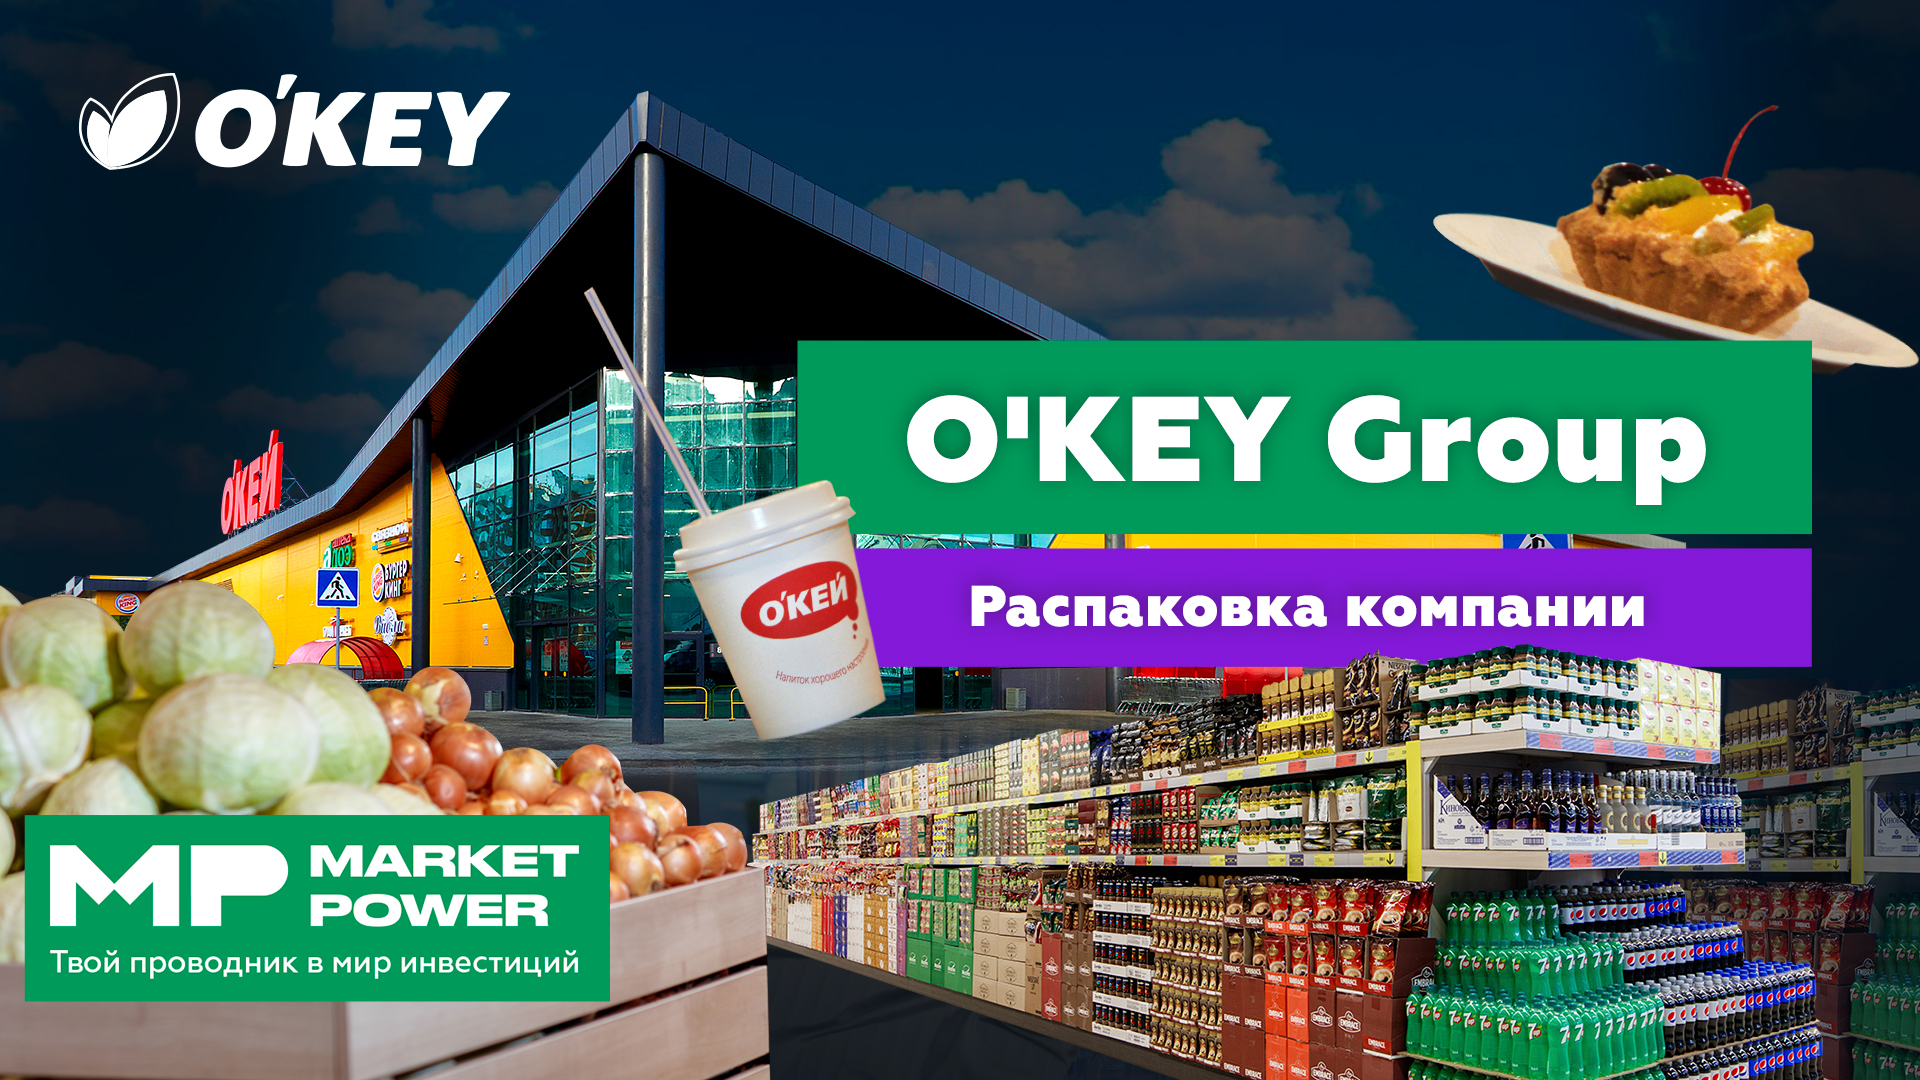 Акции O'KEY Group I Продуктовые магазины I Гипермаркеты и дискаунтеры “Да!”